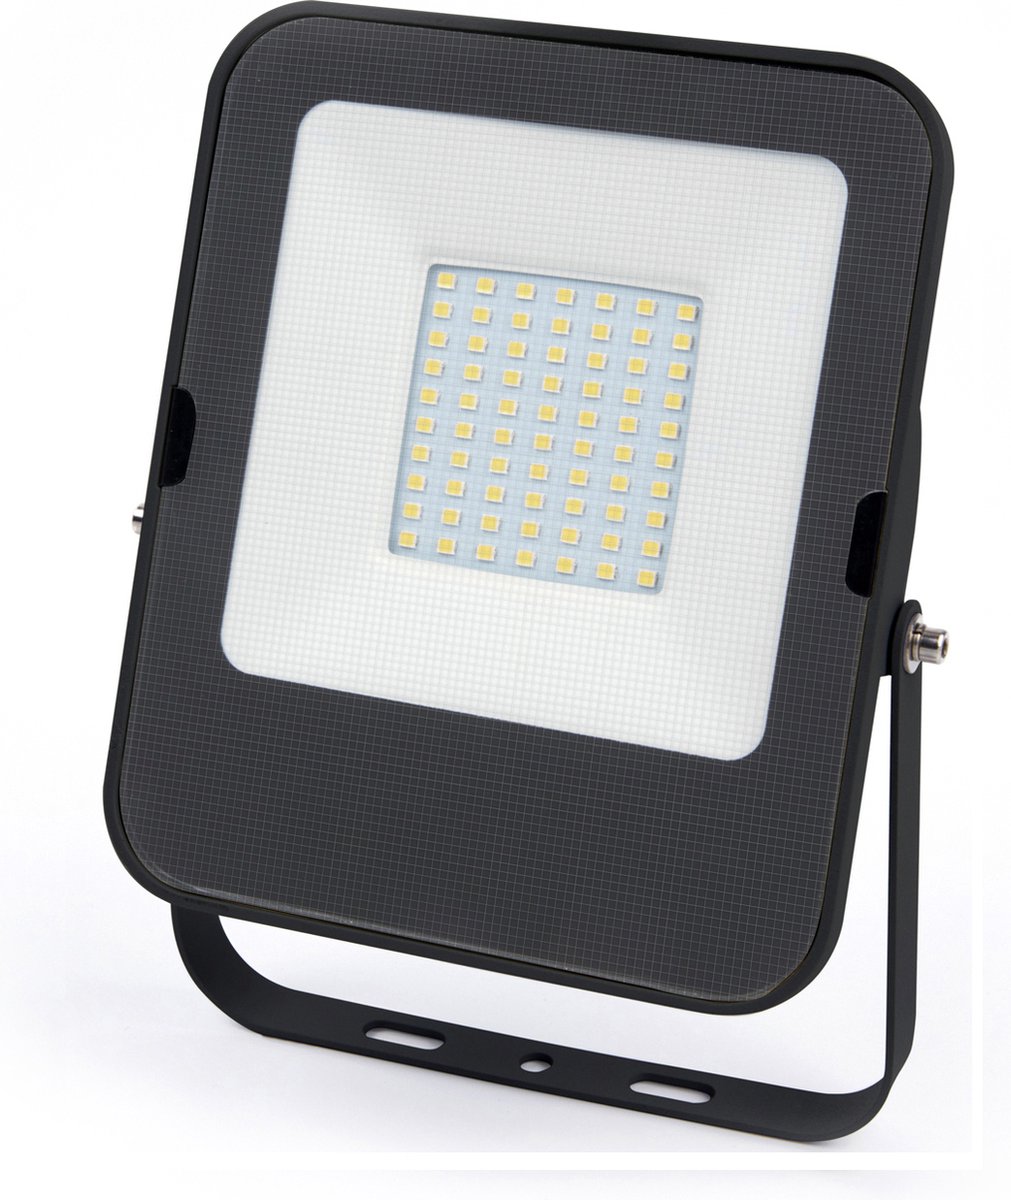 LED Floodlight - Bouwlamp Premium | 50 Watt | 6500K - Daglicht wit